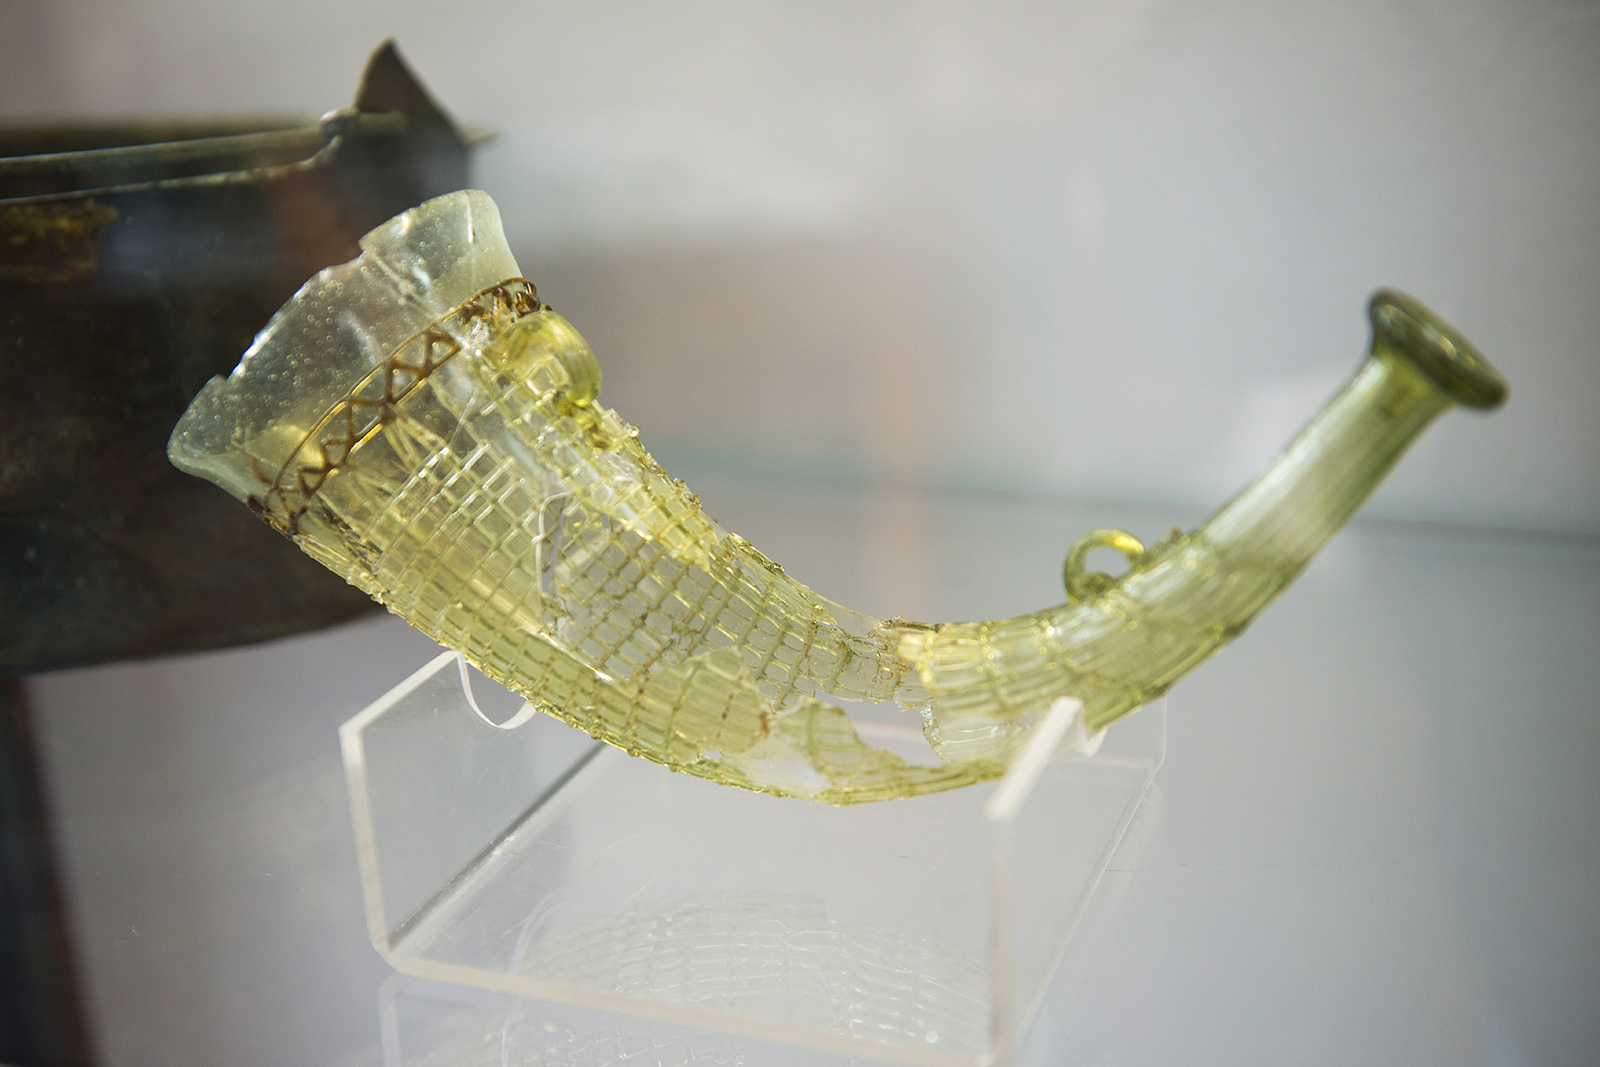 La corne à boire a été trouvée dans une tombe du cimetière de Samson, nécropole d'environ 250 tombes dont l'utilisation s'étend sans interruption de la fin de l'époque romaine (seconde moitié du IV e S.) jusque dans le courant de l'époque mérovingienne (fin du VI e S.). Musée Archéologique de Namur - Belgique